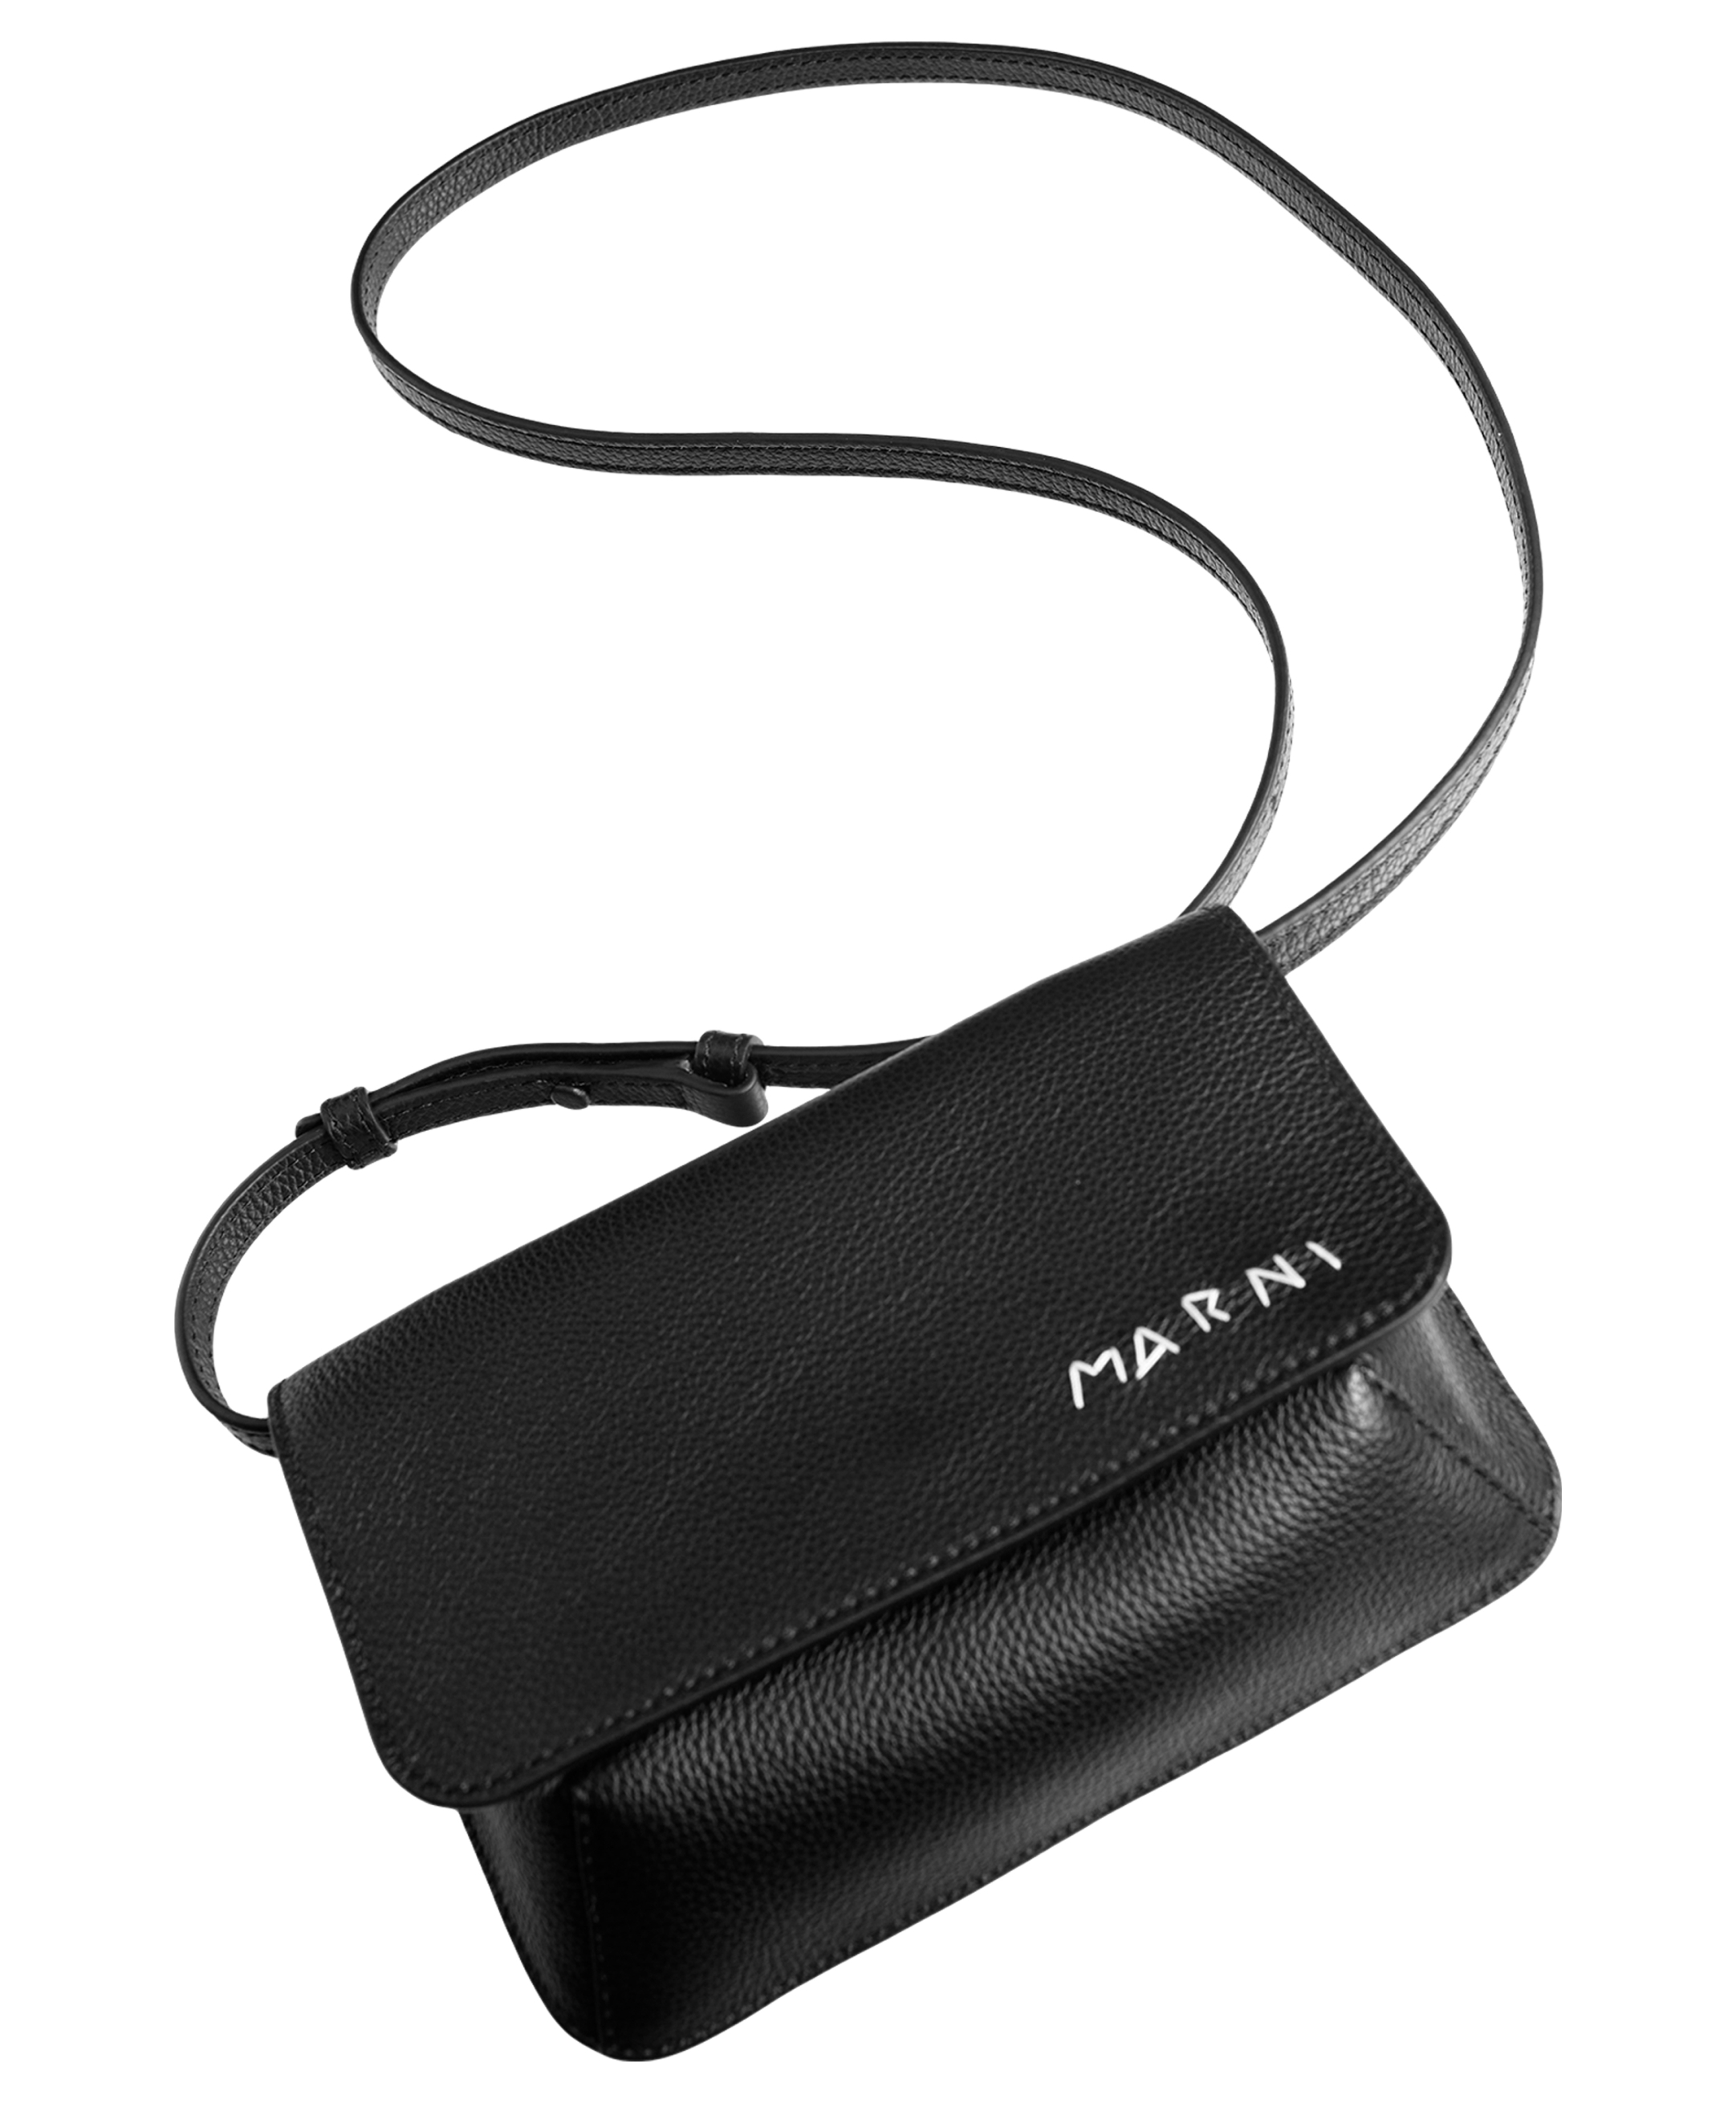 Кожаная сумка с вышитым логотипом Marni PHMO0038L4/P6533/00N99, размер One Size